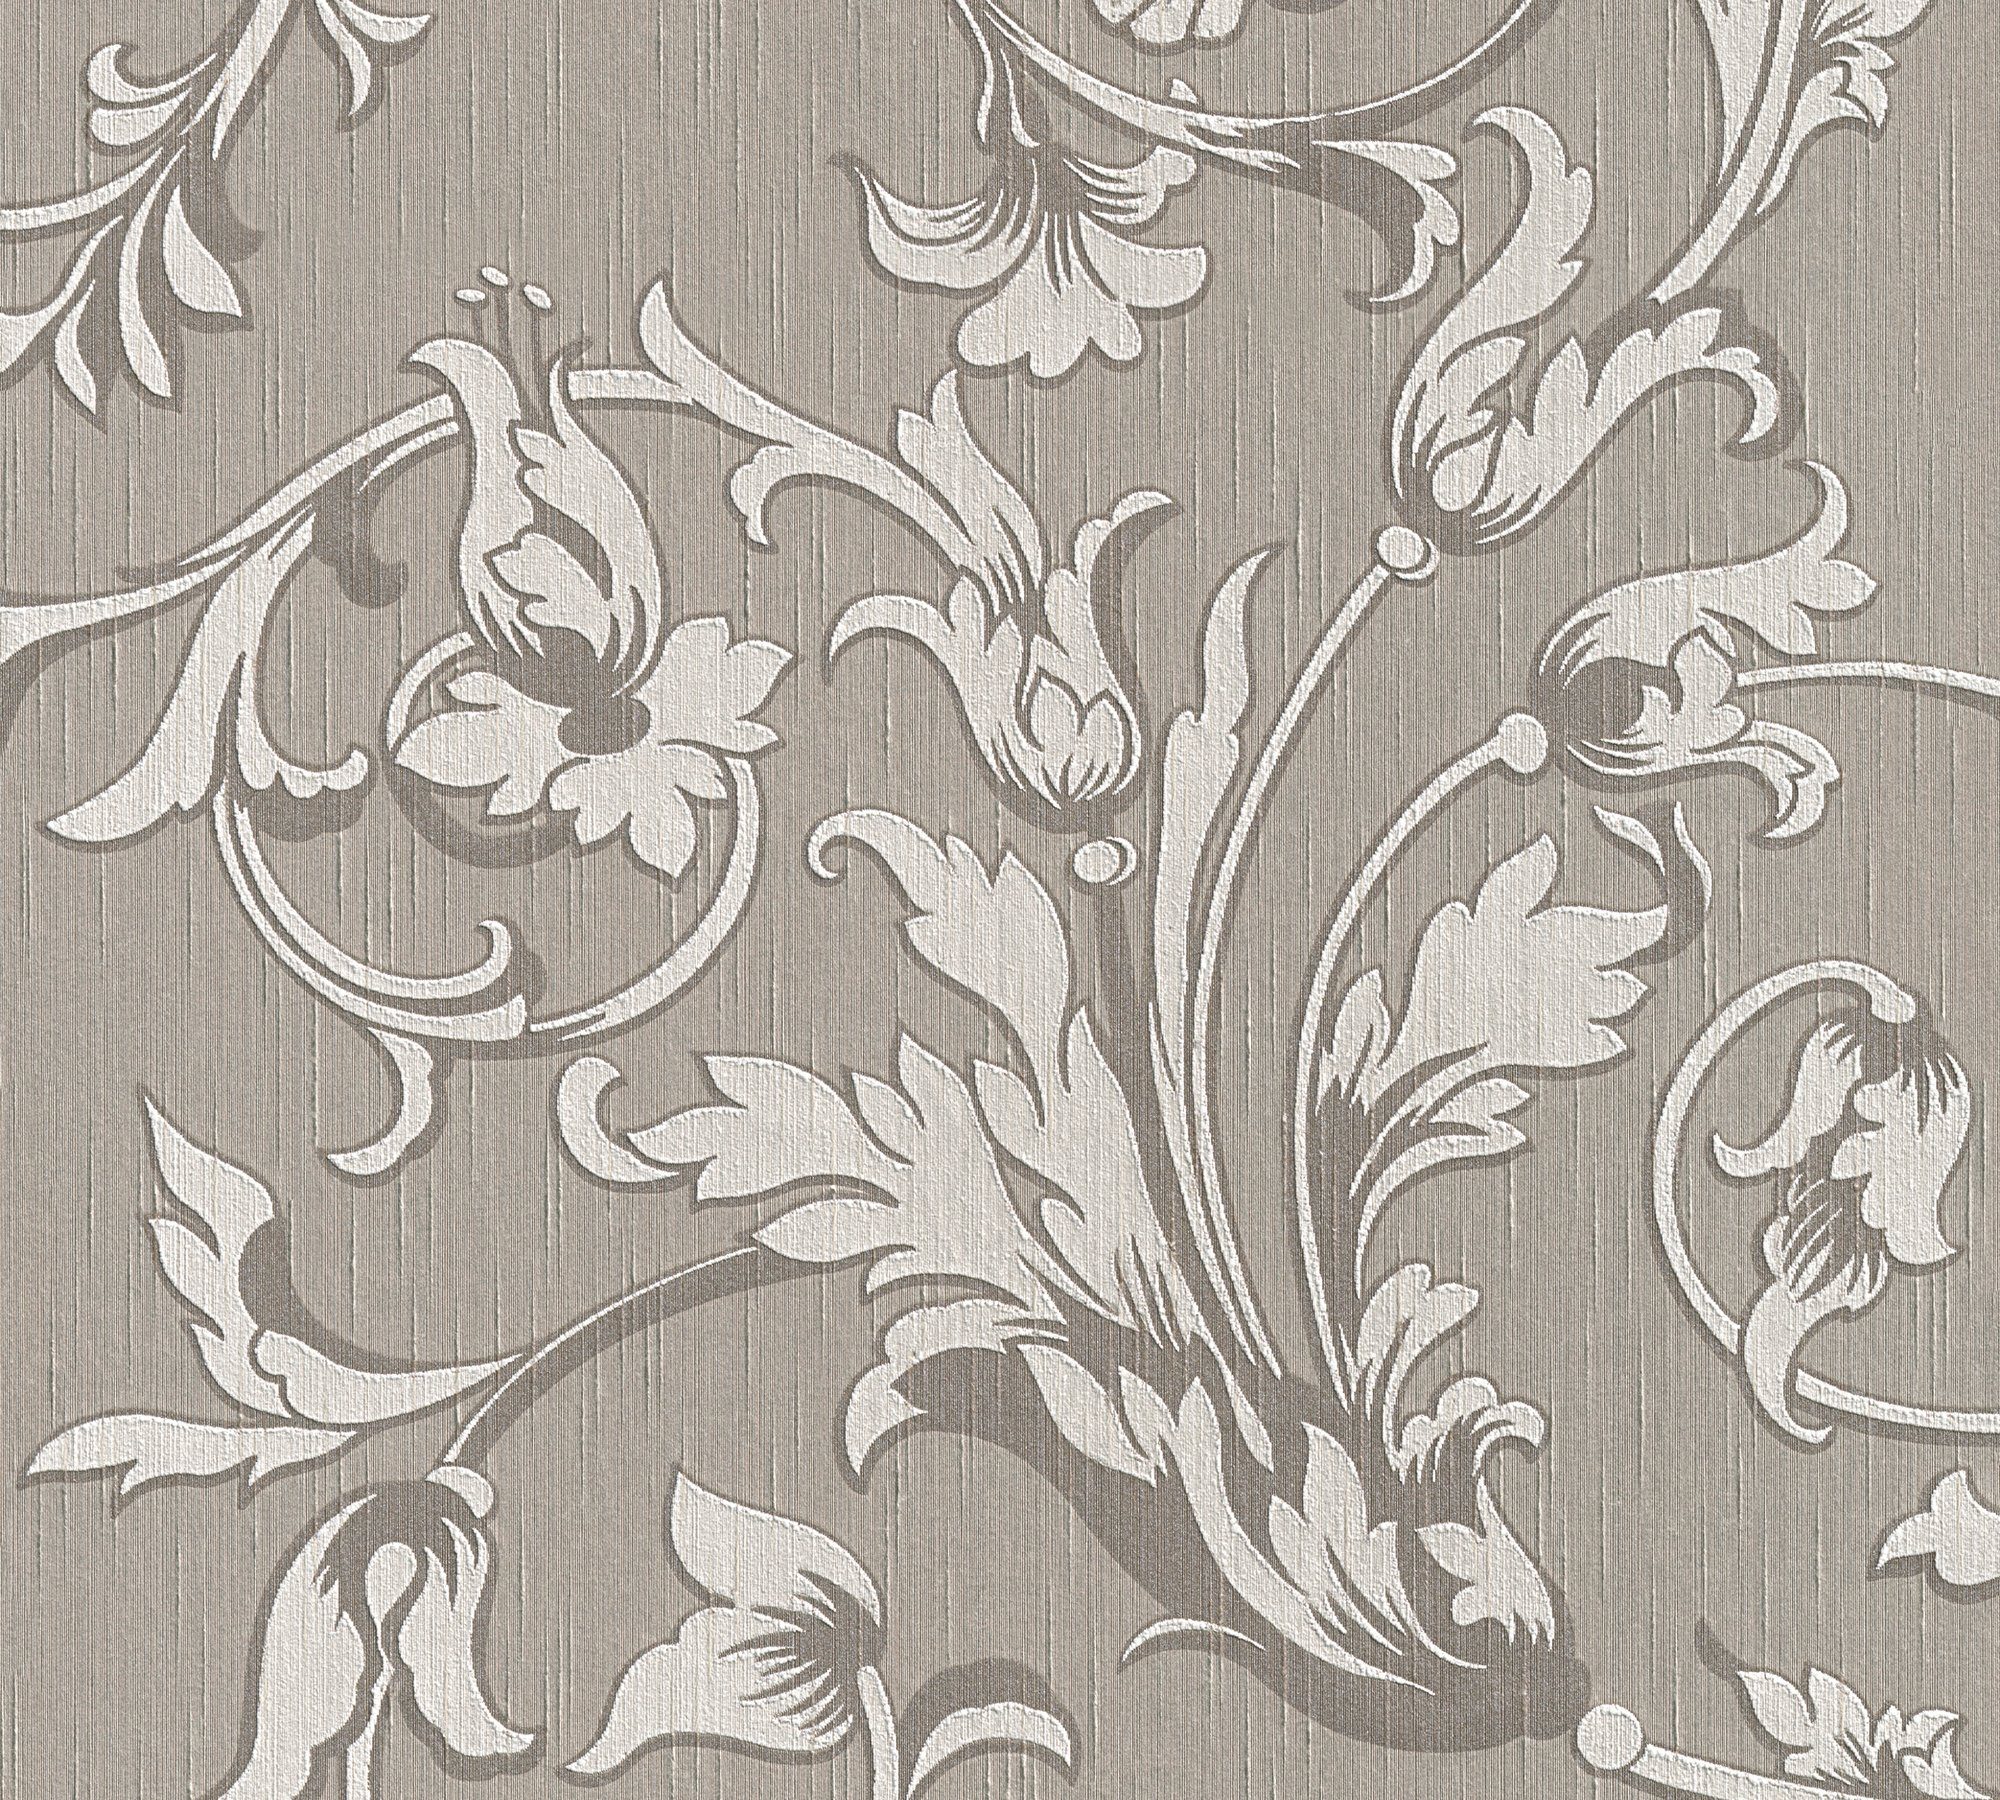 Blumen Paper Tessuto, Textiltapete Architects Floral grau/beige samtig, floral, Barock, Tapete